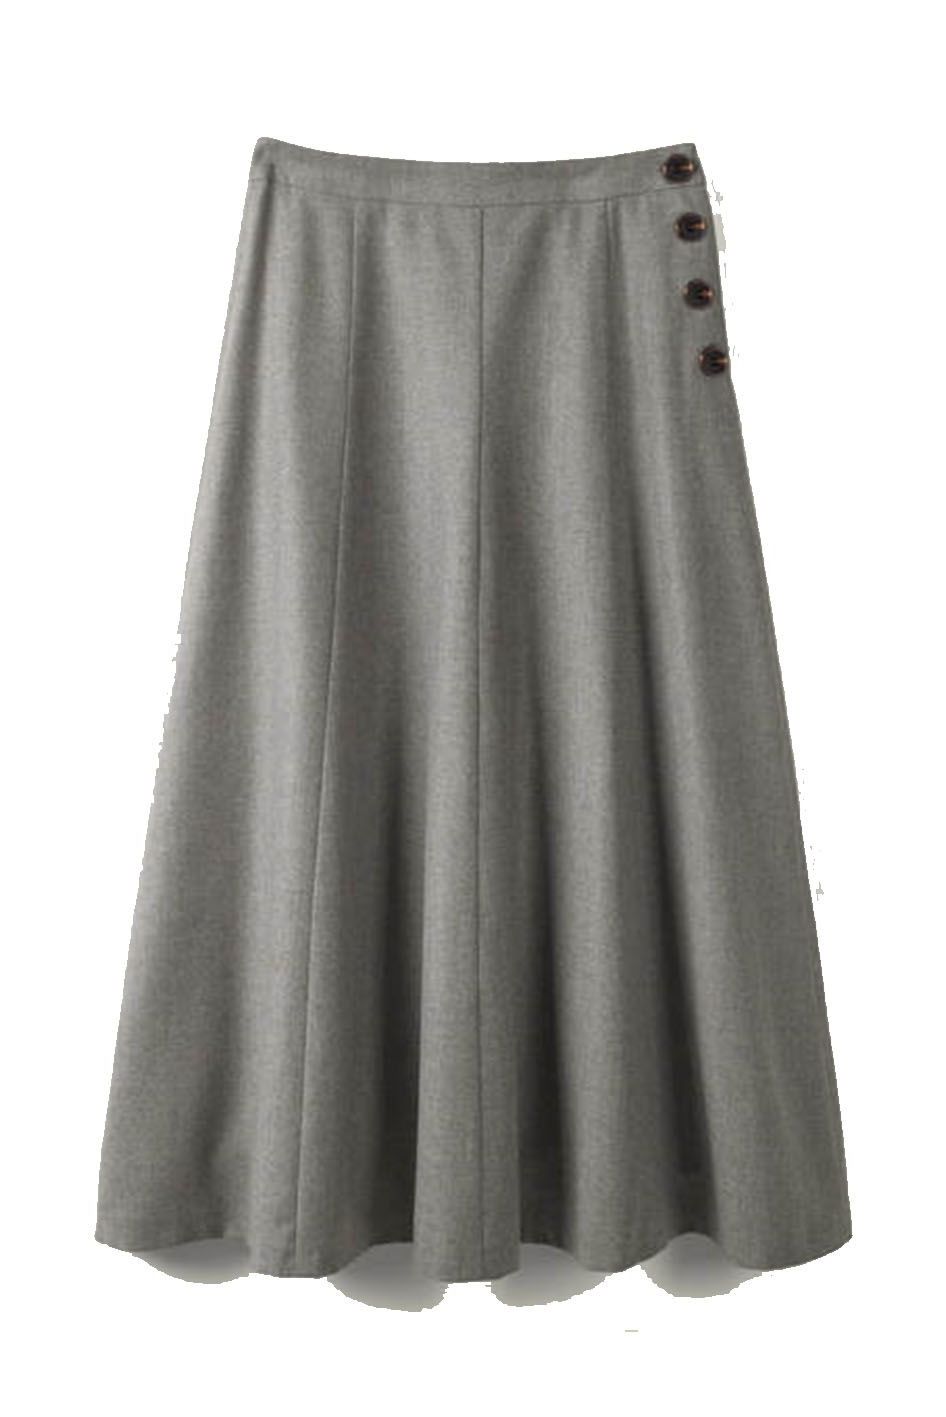 Esme British Tweed Midi Skirt, £120